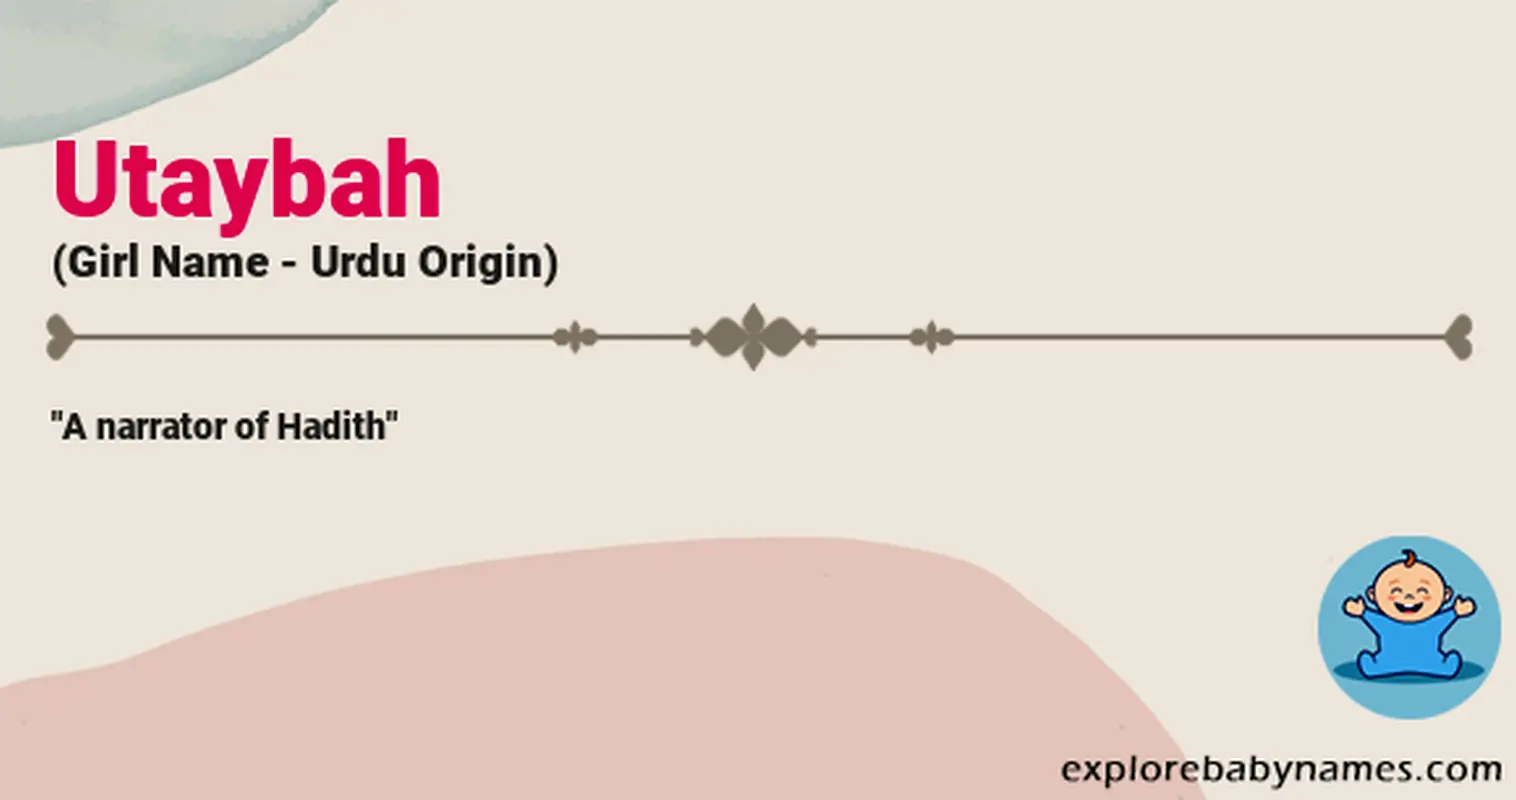 Meaning of Utaybah